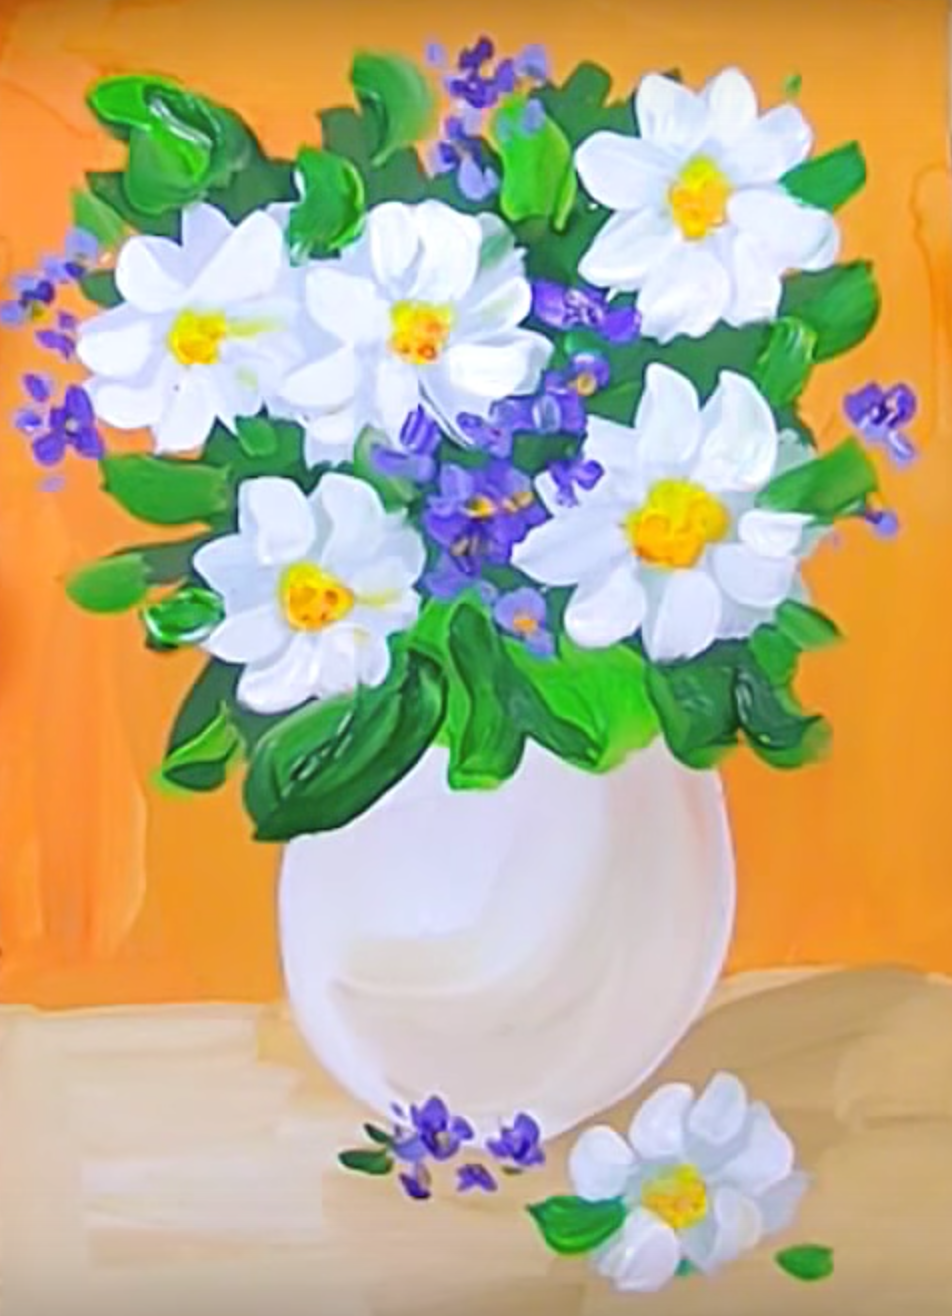 Как нарисовать вазу с цветами | DRAWINGFORALL.RU